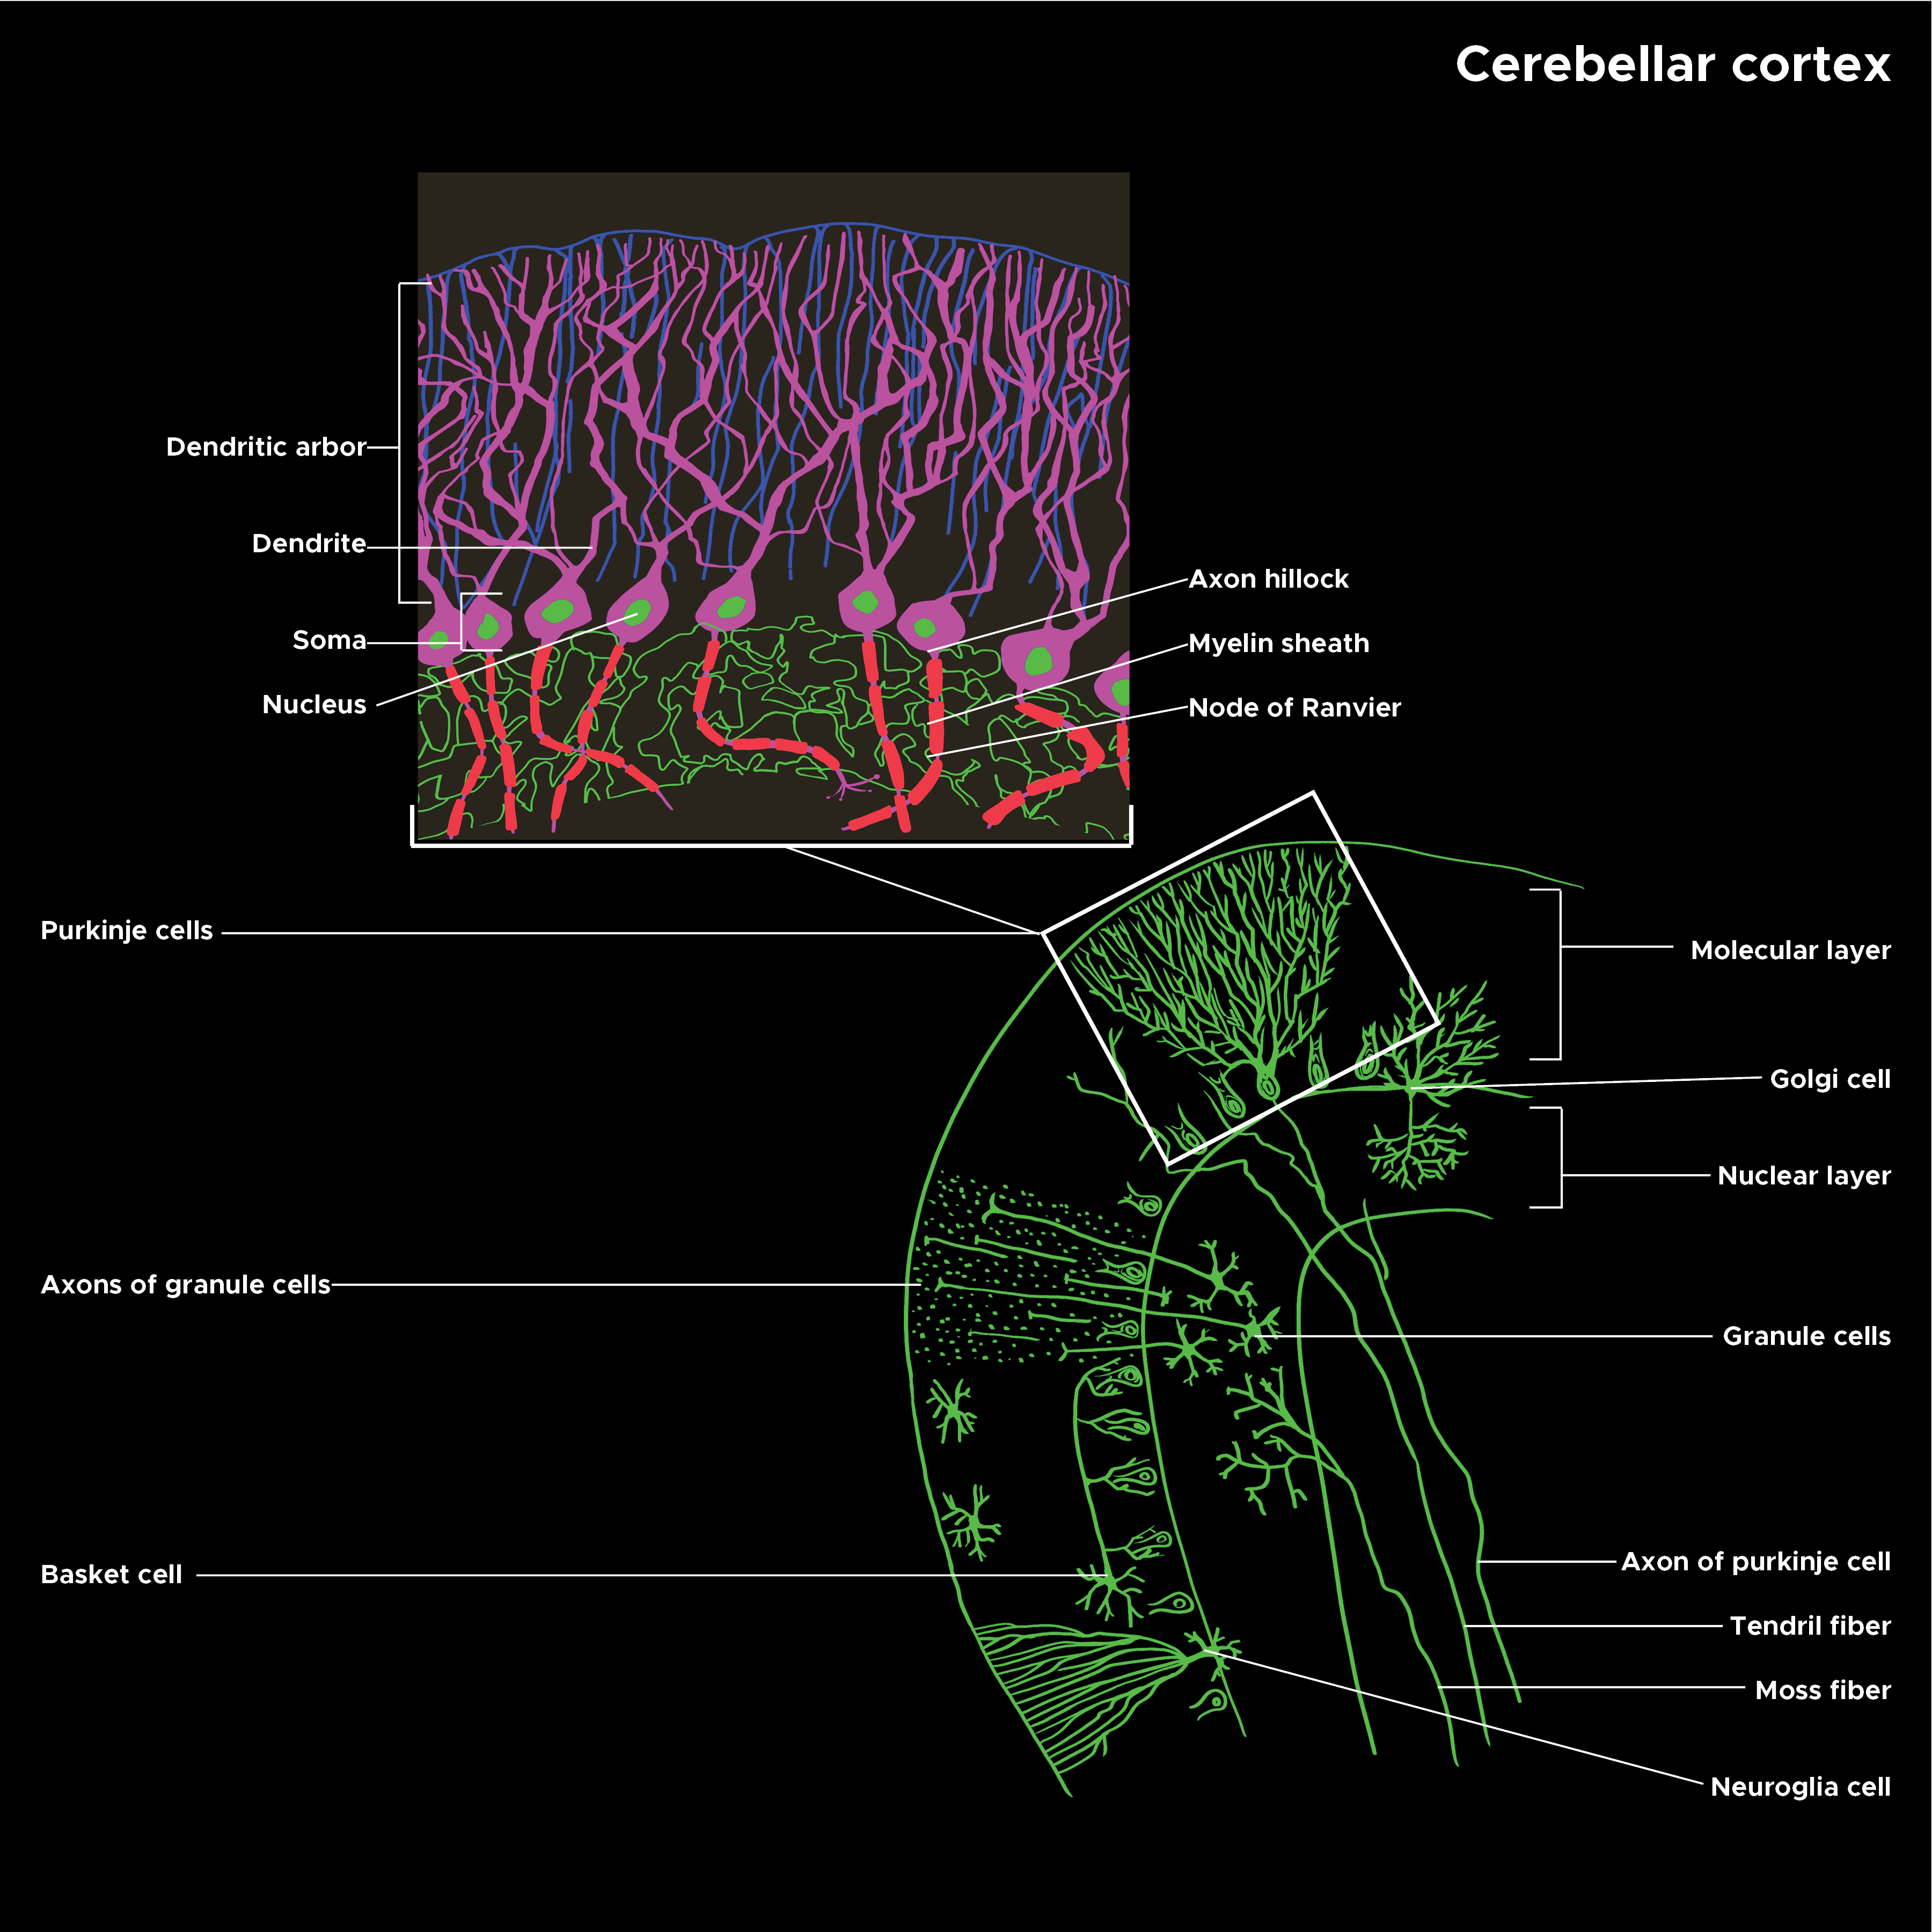 Illustration of cerebellar cortex structure